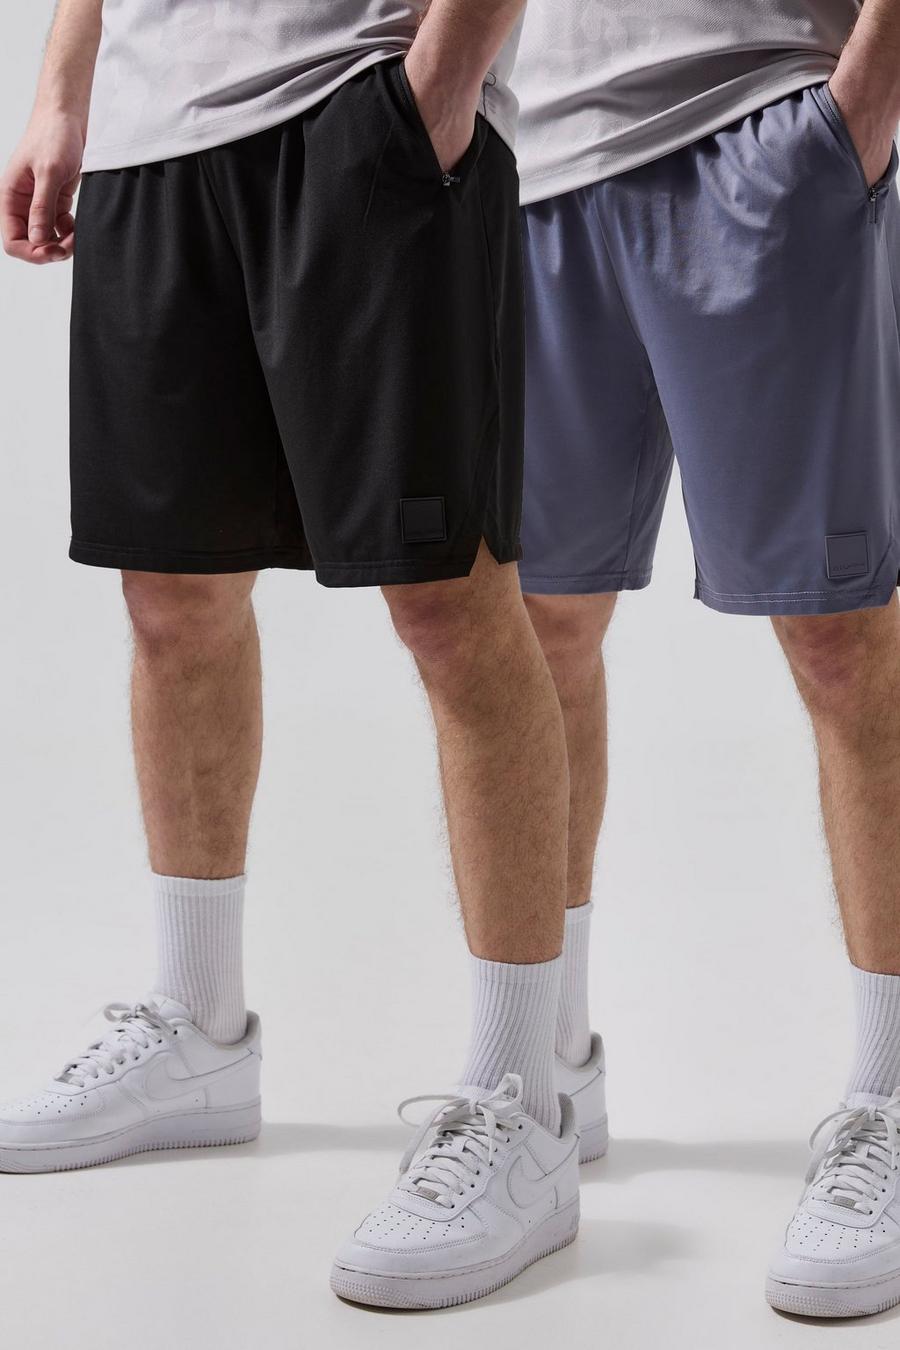 Tall - Lot de 2 shorts de sport - MAN Active, Multi